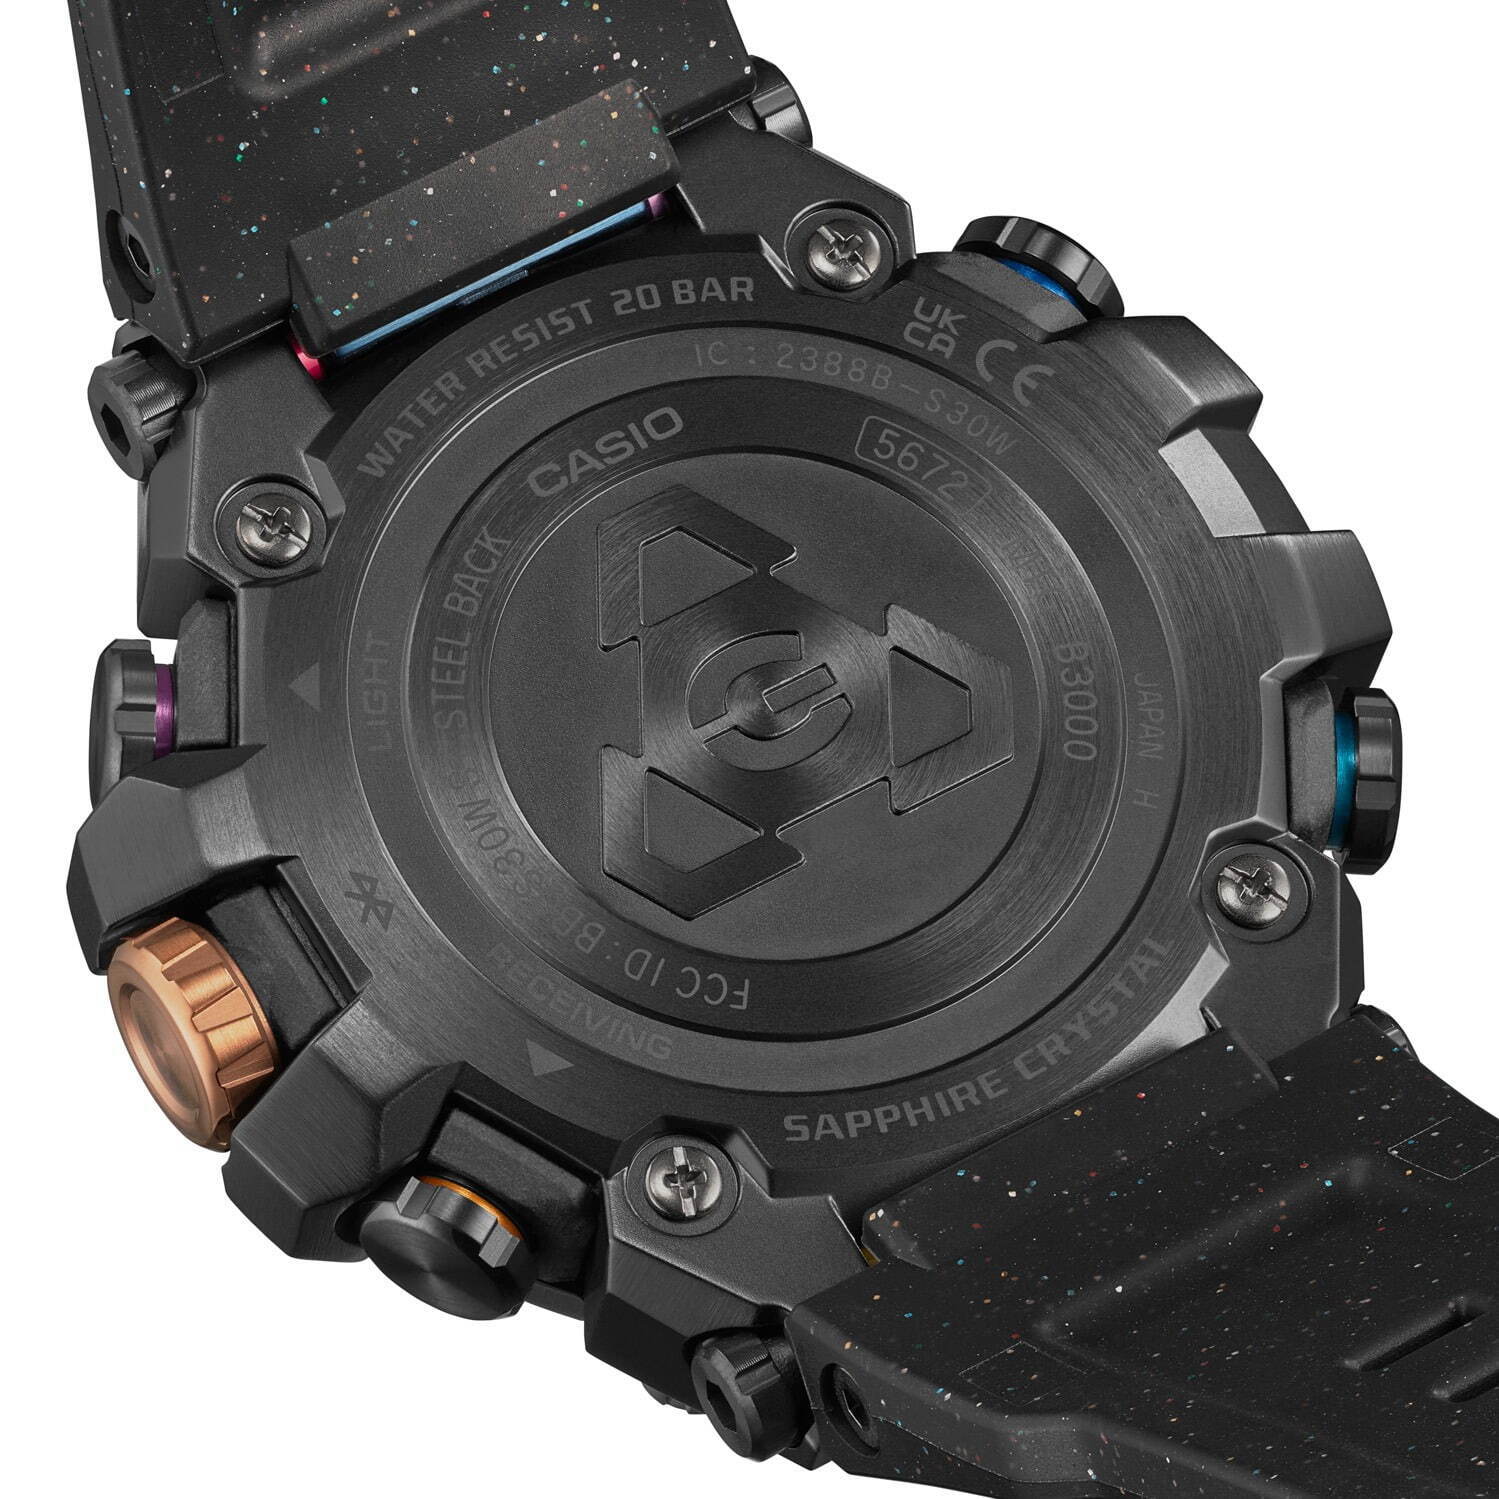 G-SHOCKの腕時計「MT-G」宇宙に輝く散光星雲をモチーフにしたマルチ 